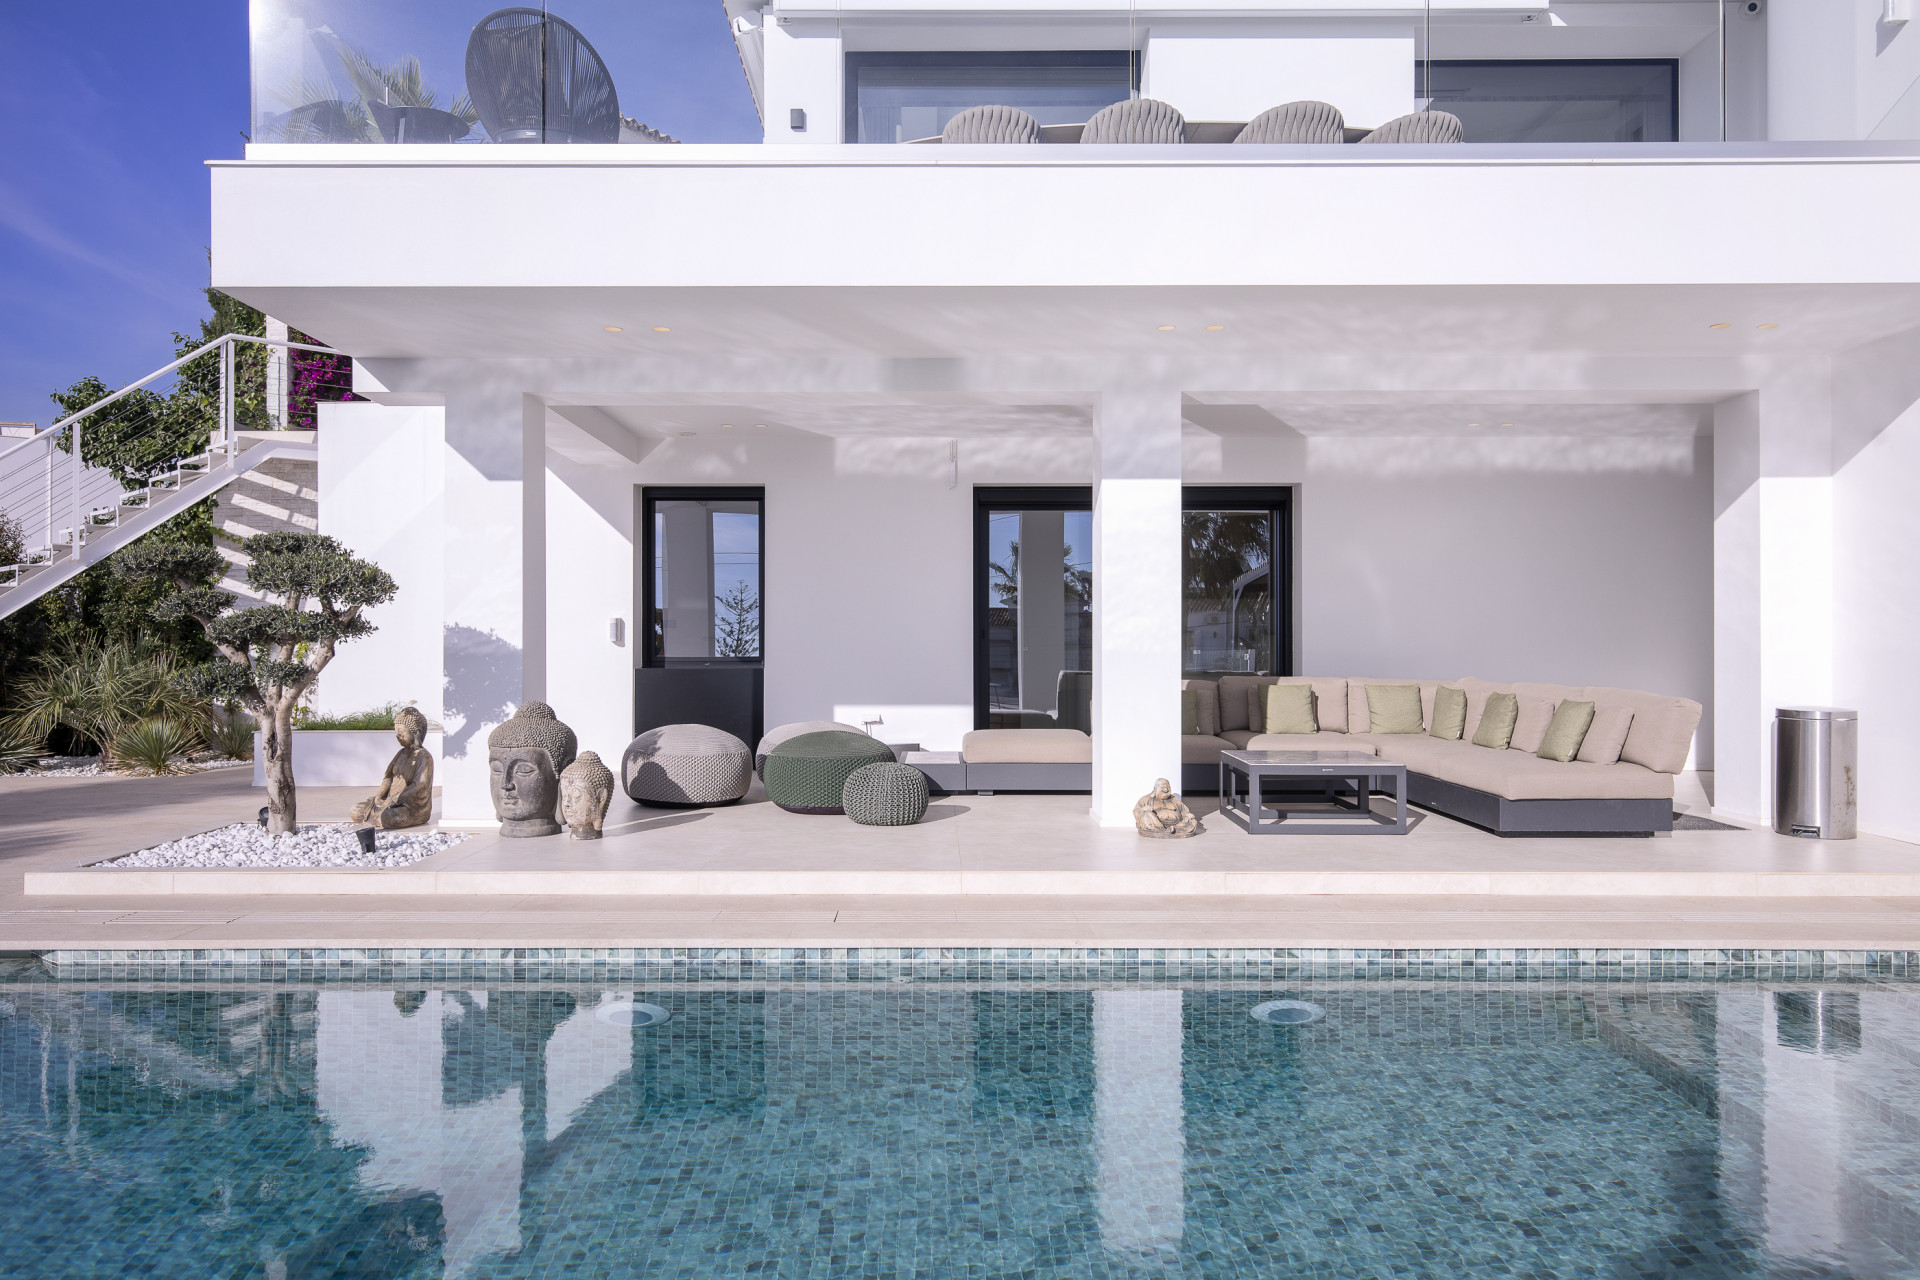 Turnkey luxury villa for sale in El Rosario, East Marbella